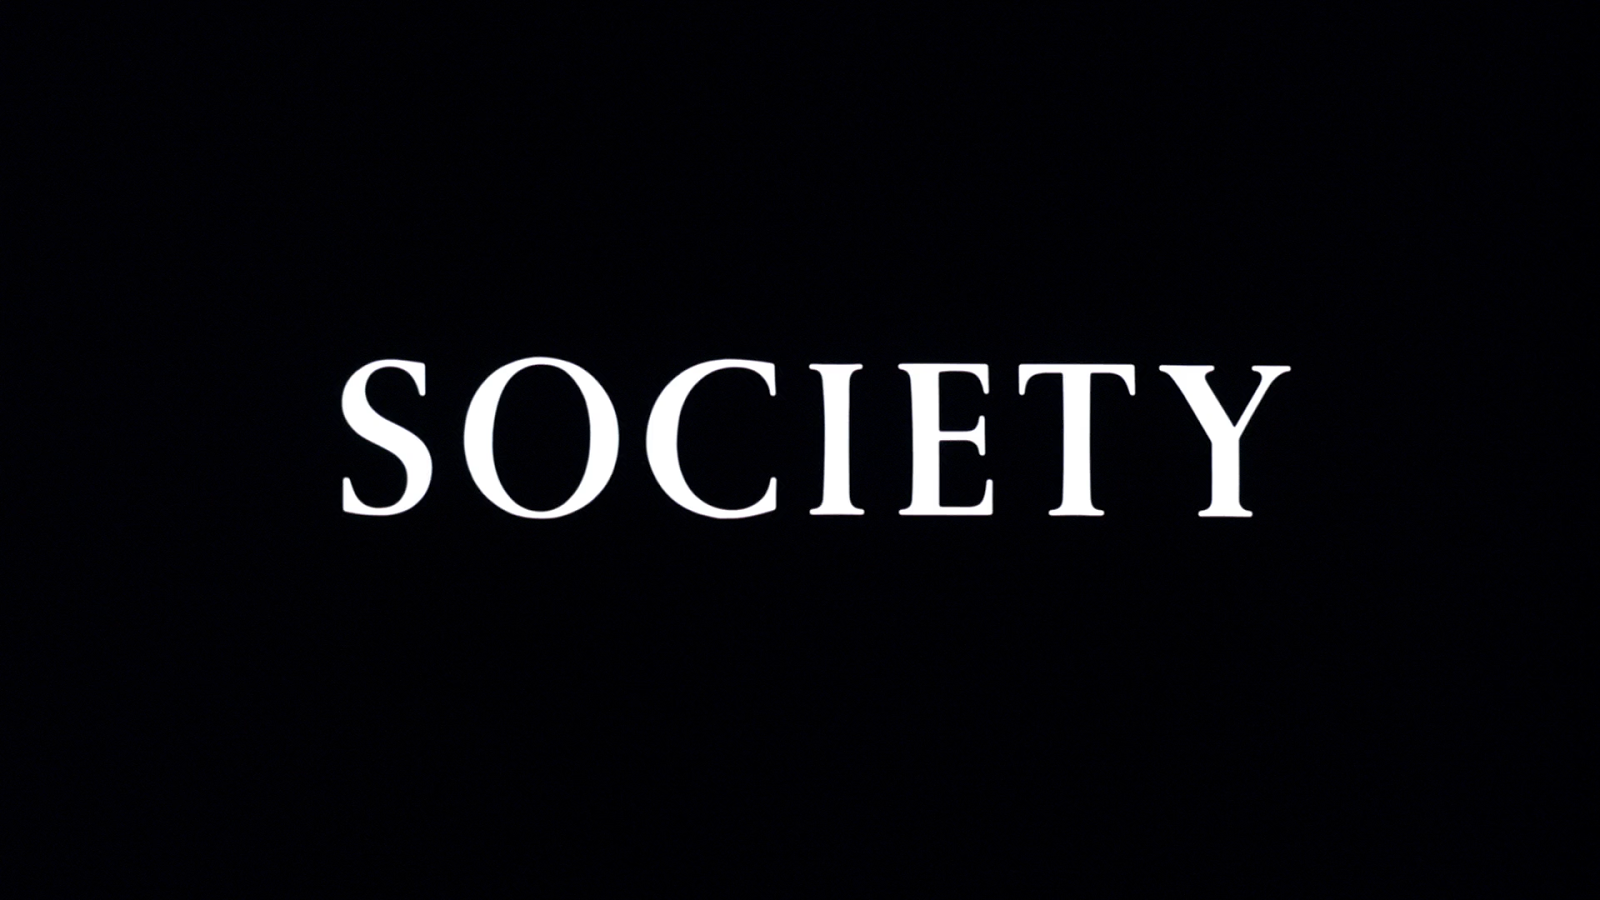 Me society. Society. Общество сосаити.